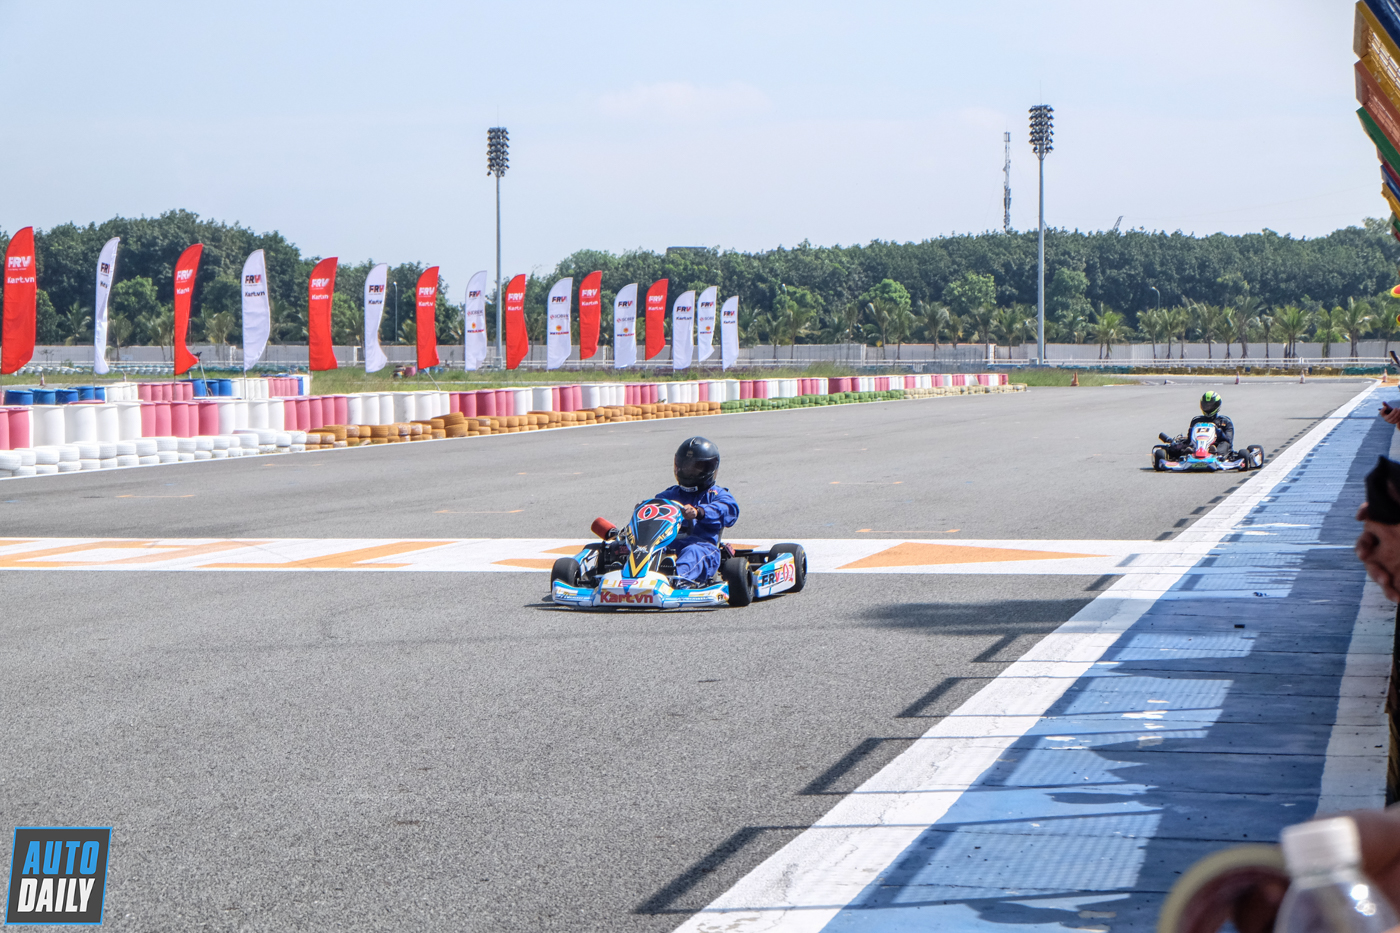 Toàn cảnh giải đua xe Go-Kart lớn nhất từ trước đến nay tại Việt Nam Giải đua xe Go-Kart Thắng hay thua, đua mới biết mùa 2 (17).JPG